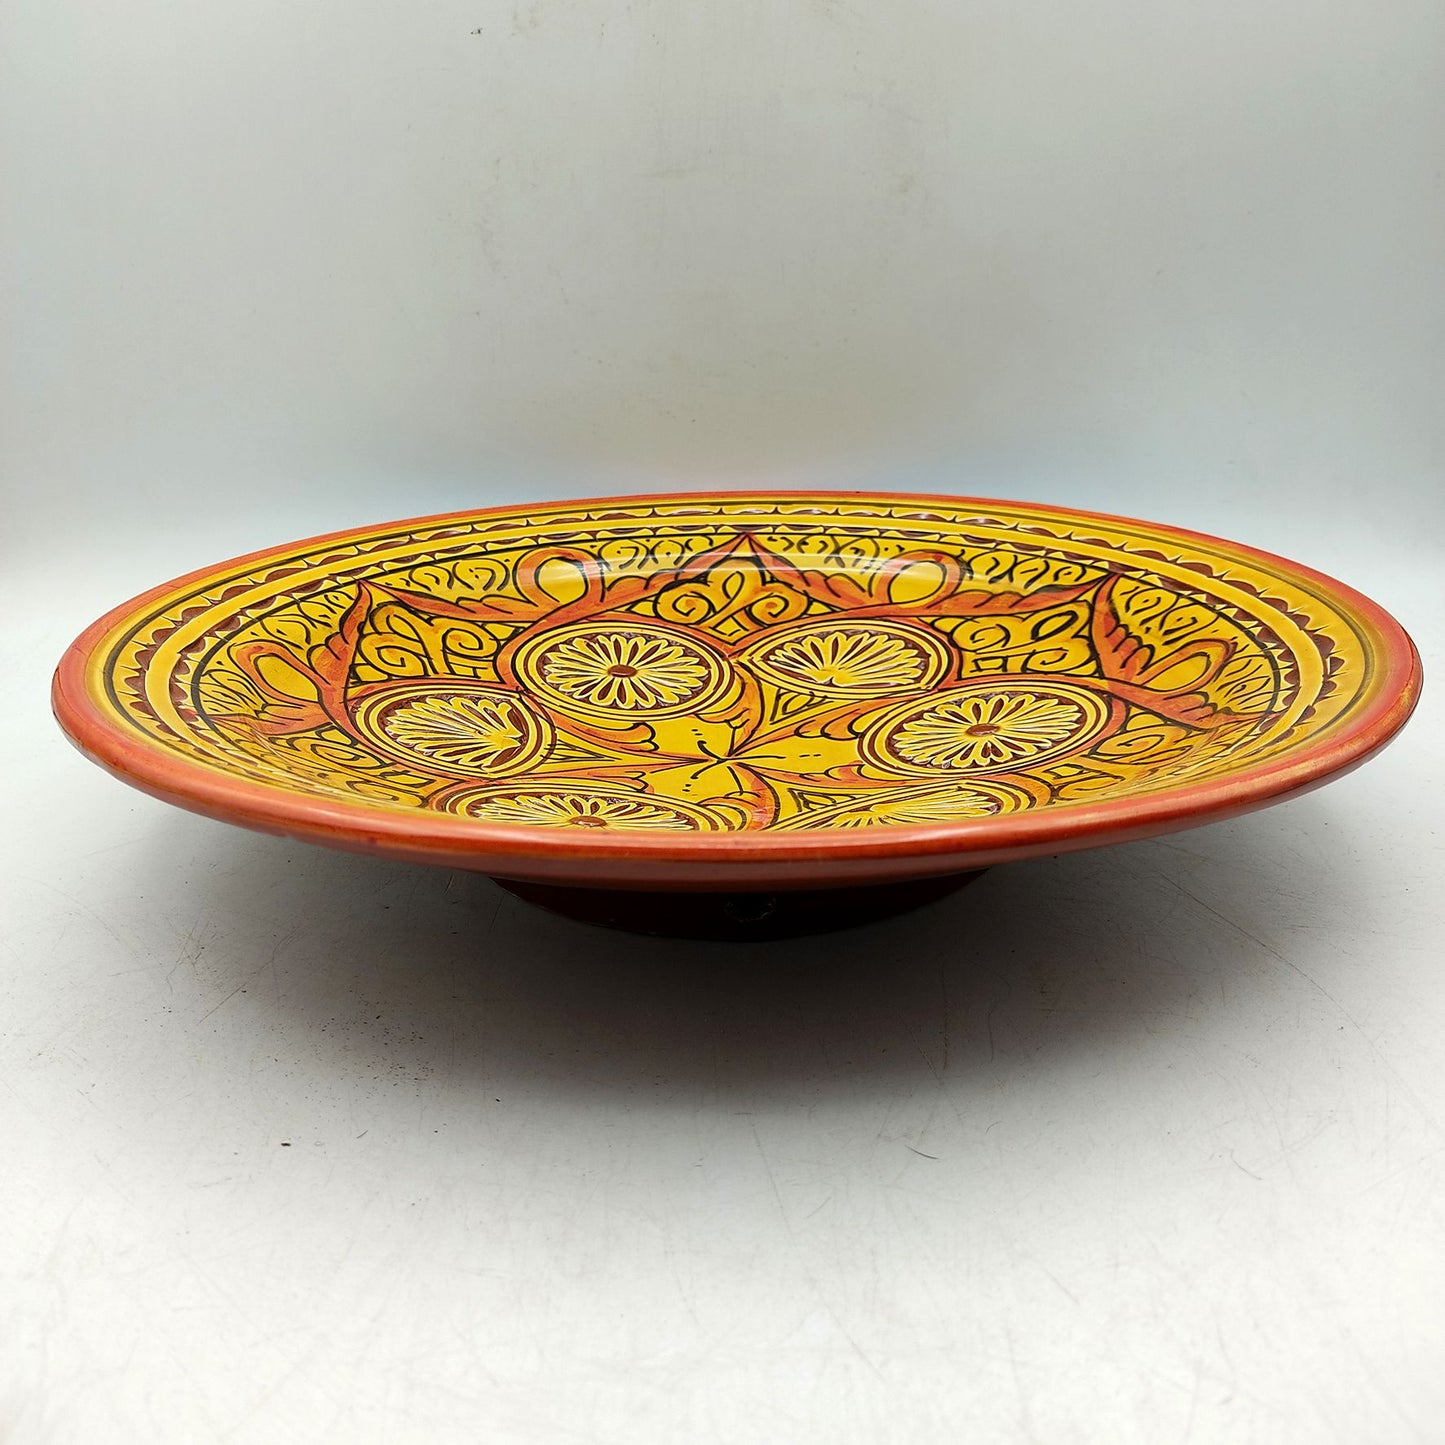 Piatto Ceramica Terracotta Parete Diam.30cm Etnico Marocchino Marocco 1801221101